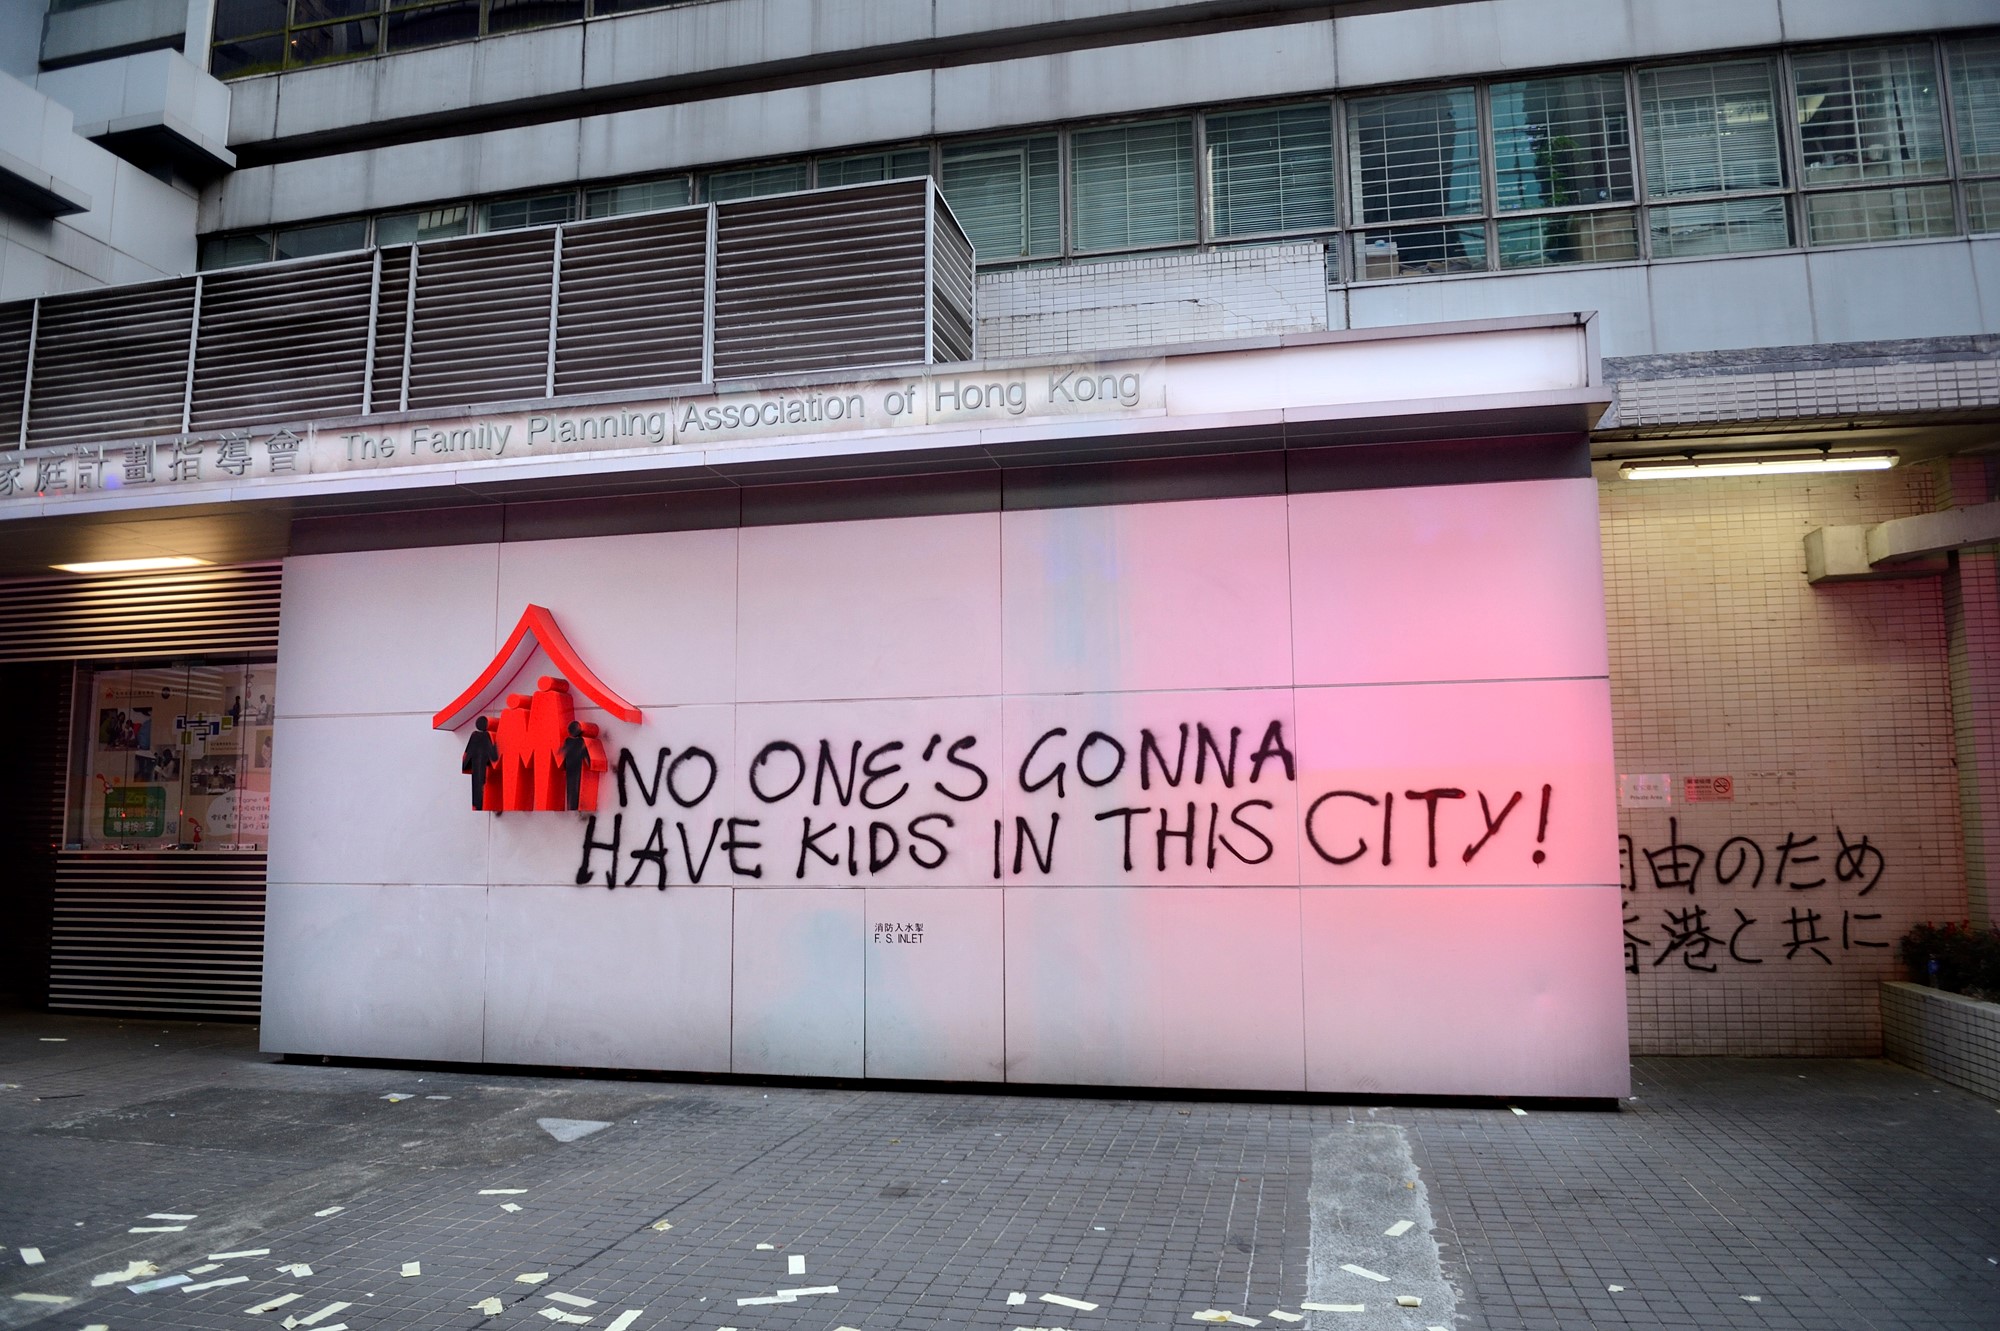 「この町では誰も子供を持たない！」と落書きされた壁